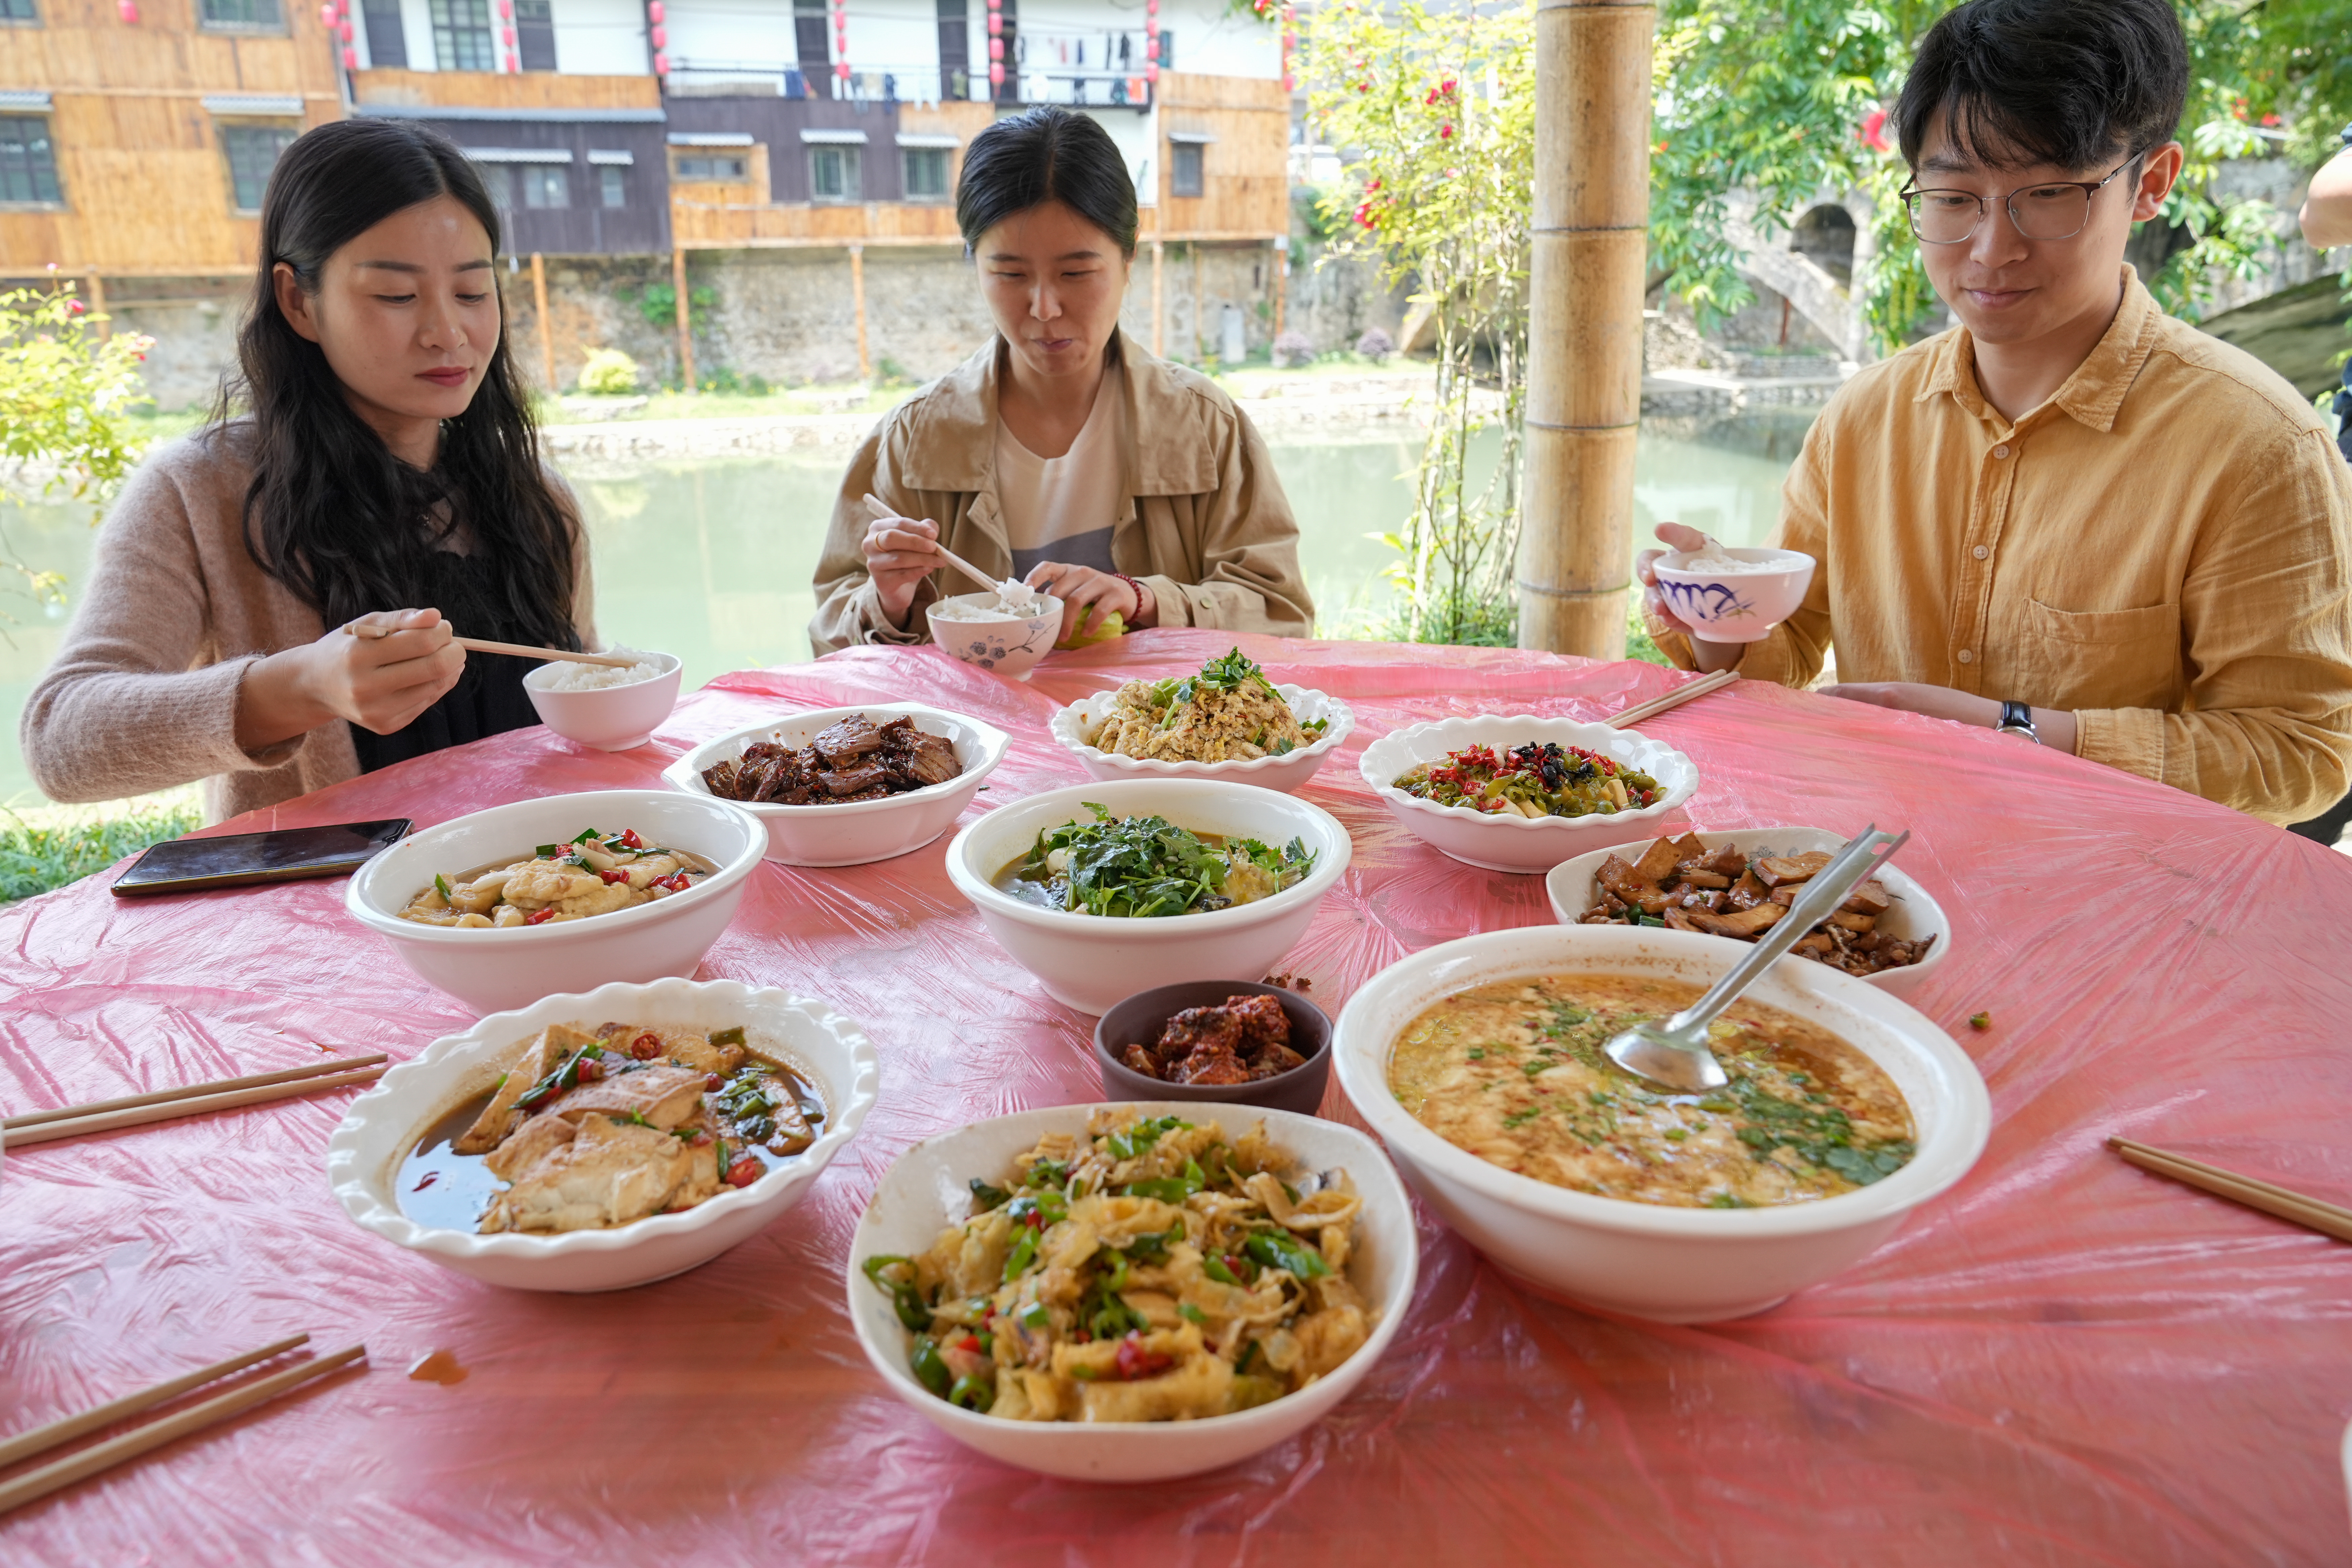 豆腐干、卤豆腐、油豆腐、臭豆腐等品种越来越丰富，豆腐成了当地村民招待客人的招牌菜。